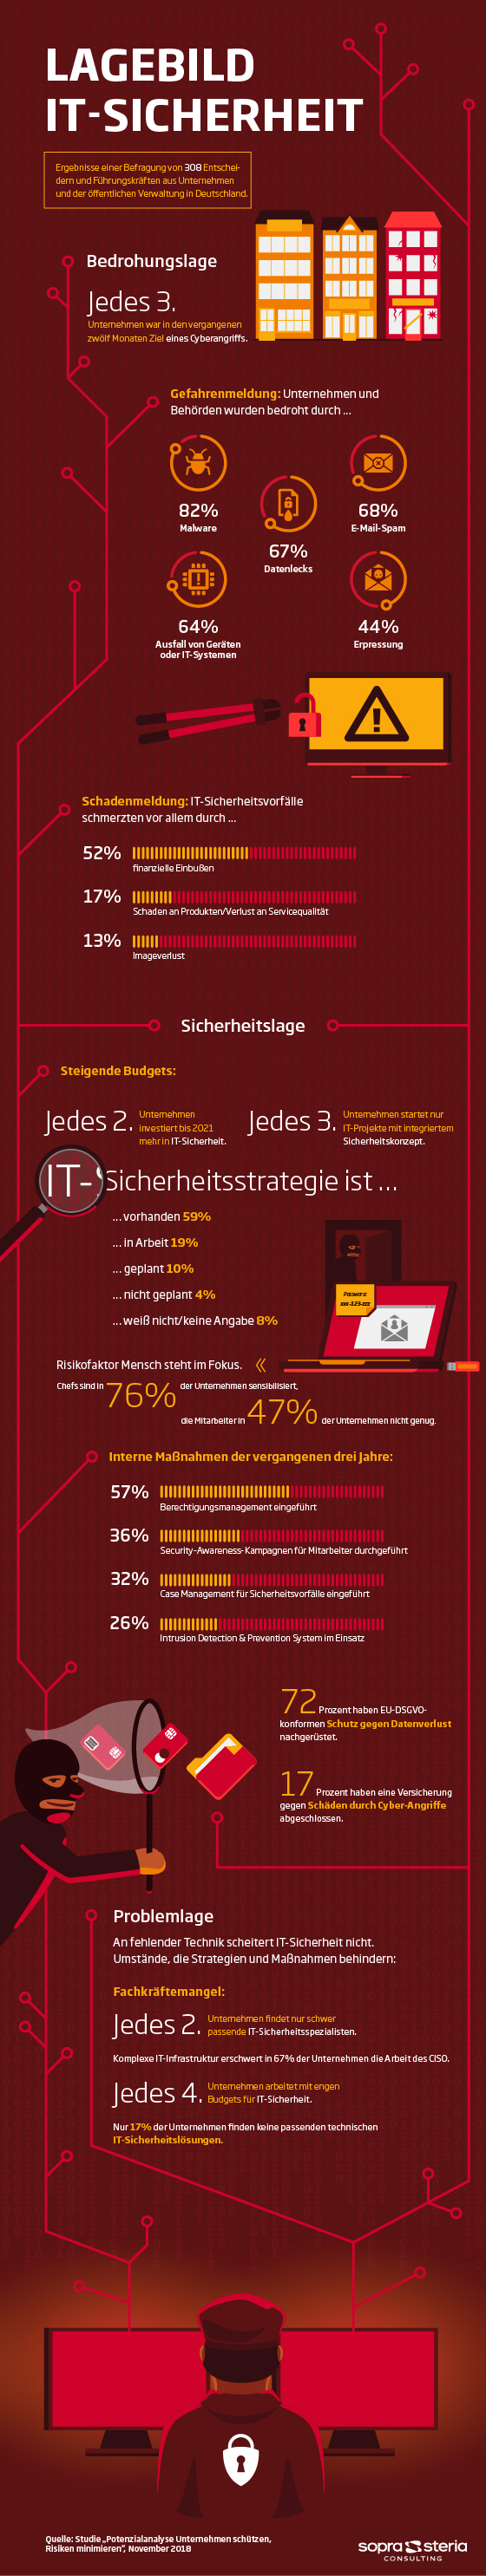 Sopra_Infografik_MK_Unternehmen_schuetzen_560pxl